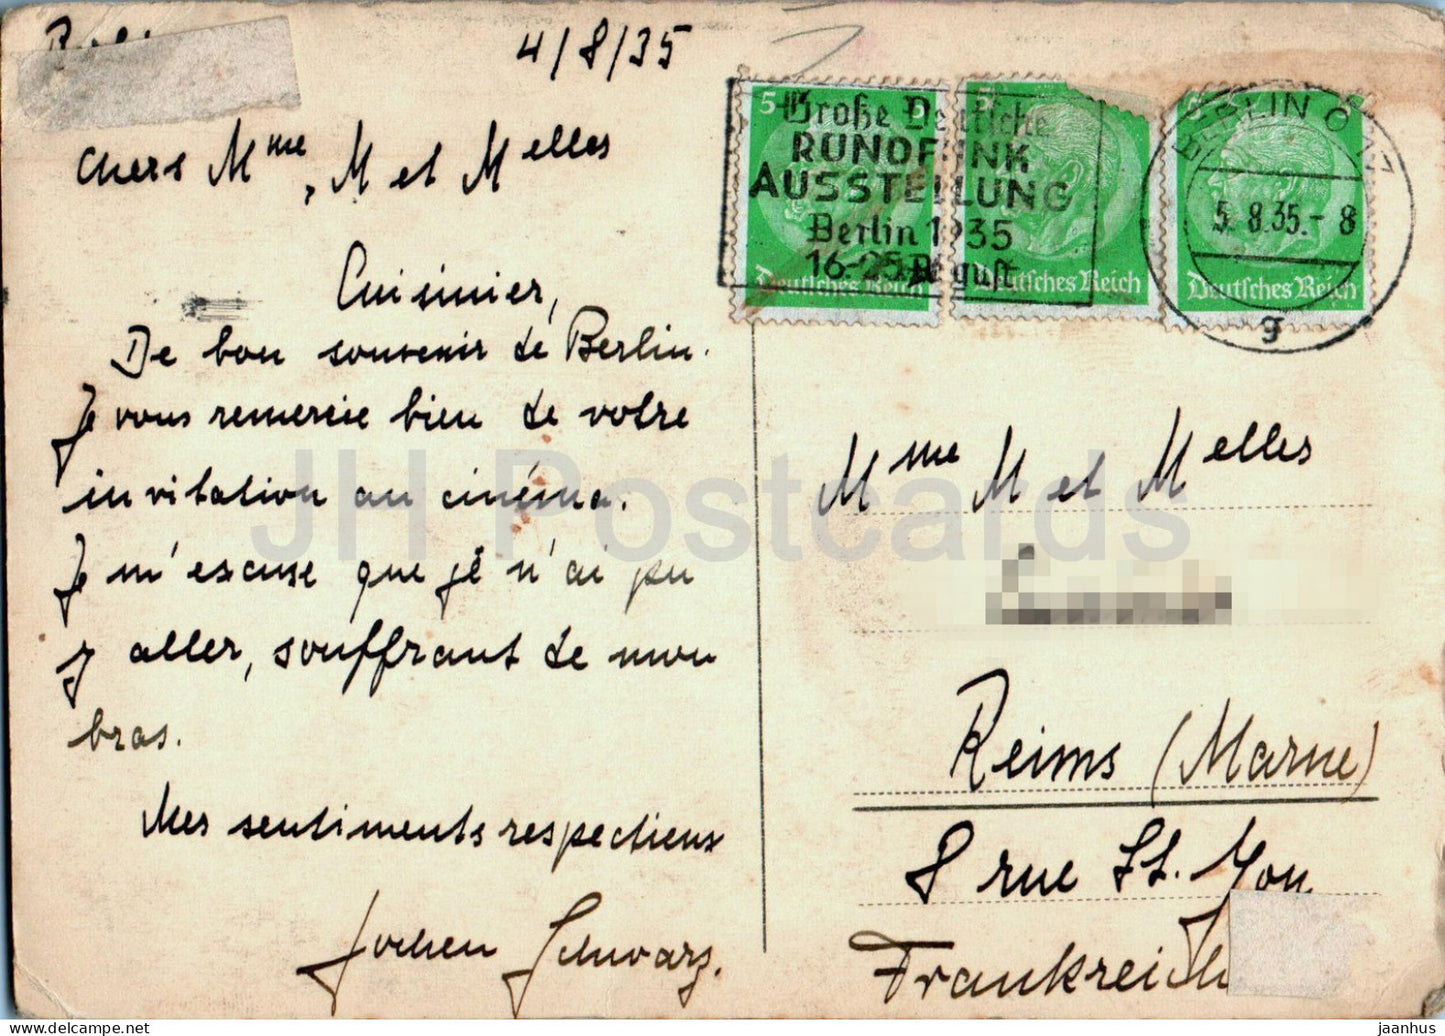 Berlin - Rathaus - carte postale ancienne - 1935 - Allemagne - utilisé 